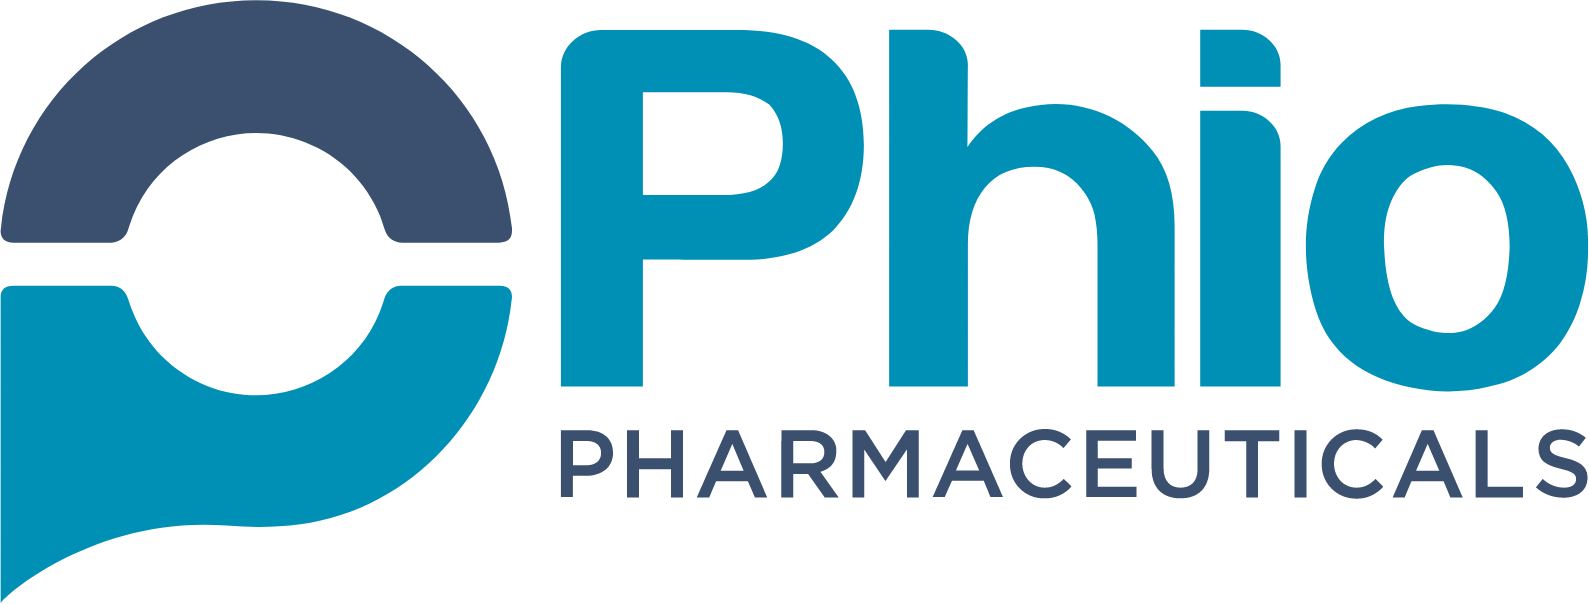 Phio Pharmaceuticals logo large (transparent PNG)